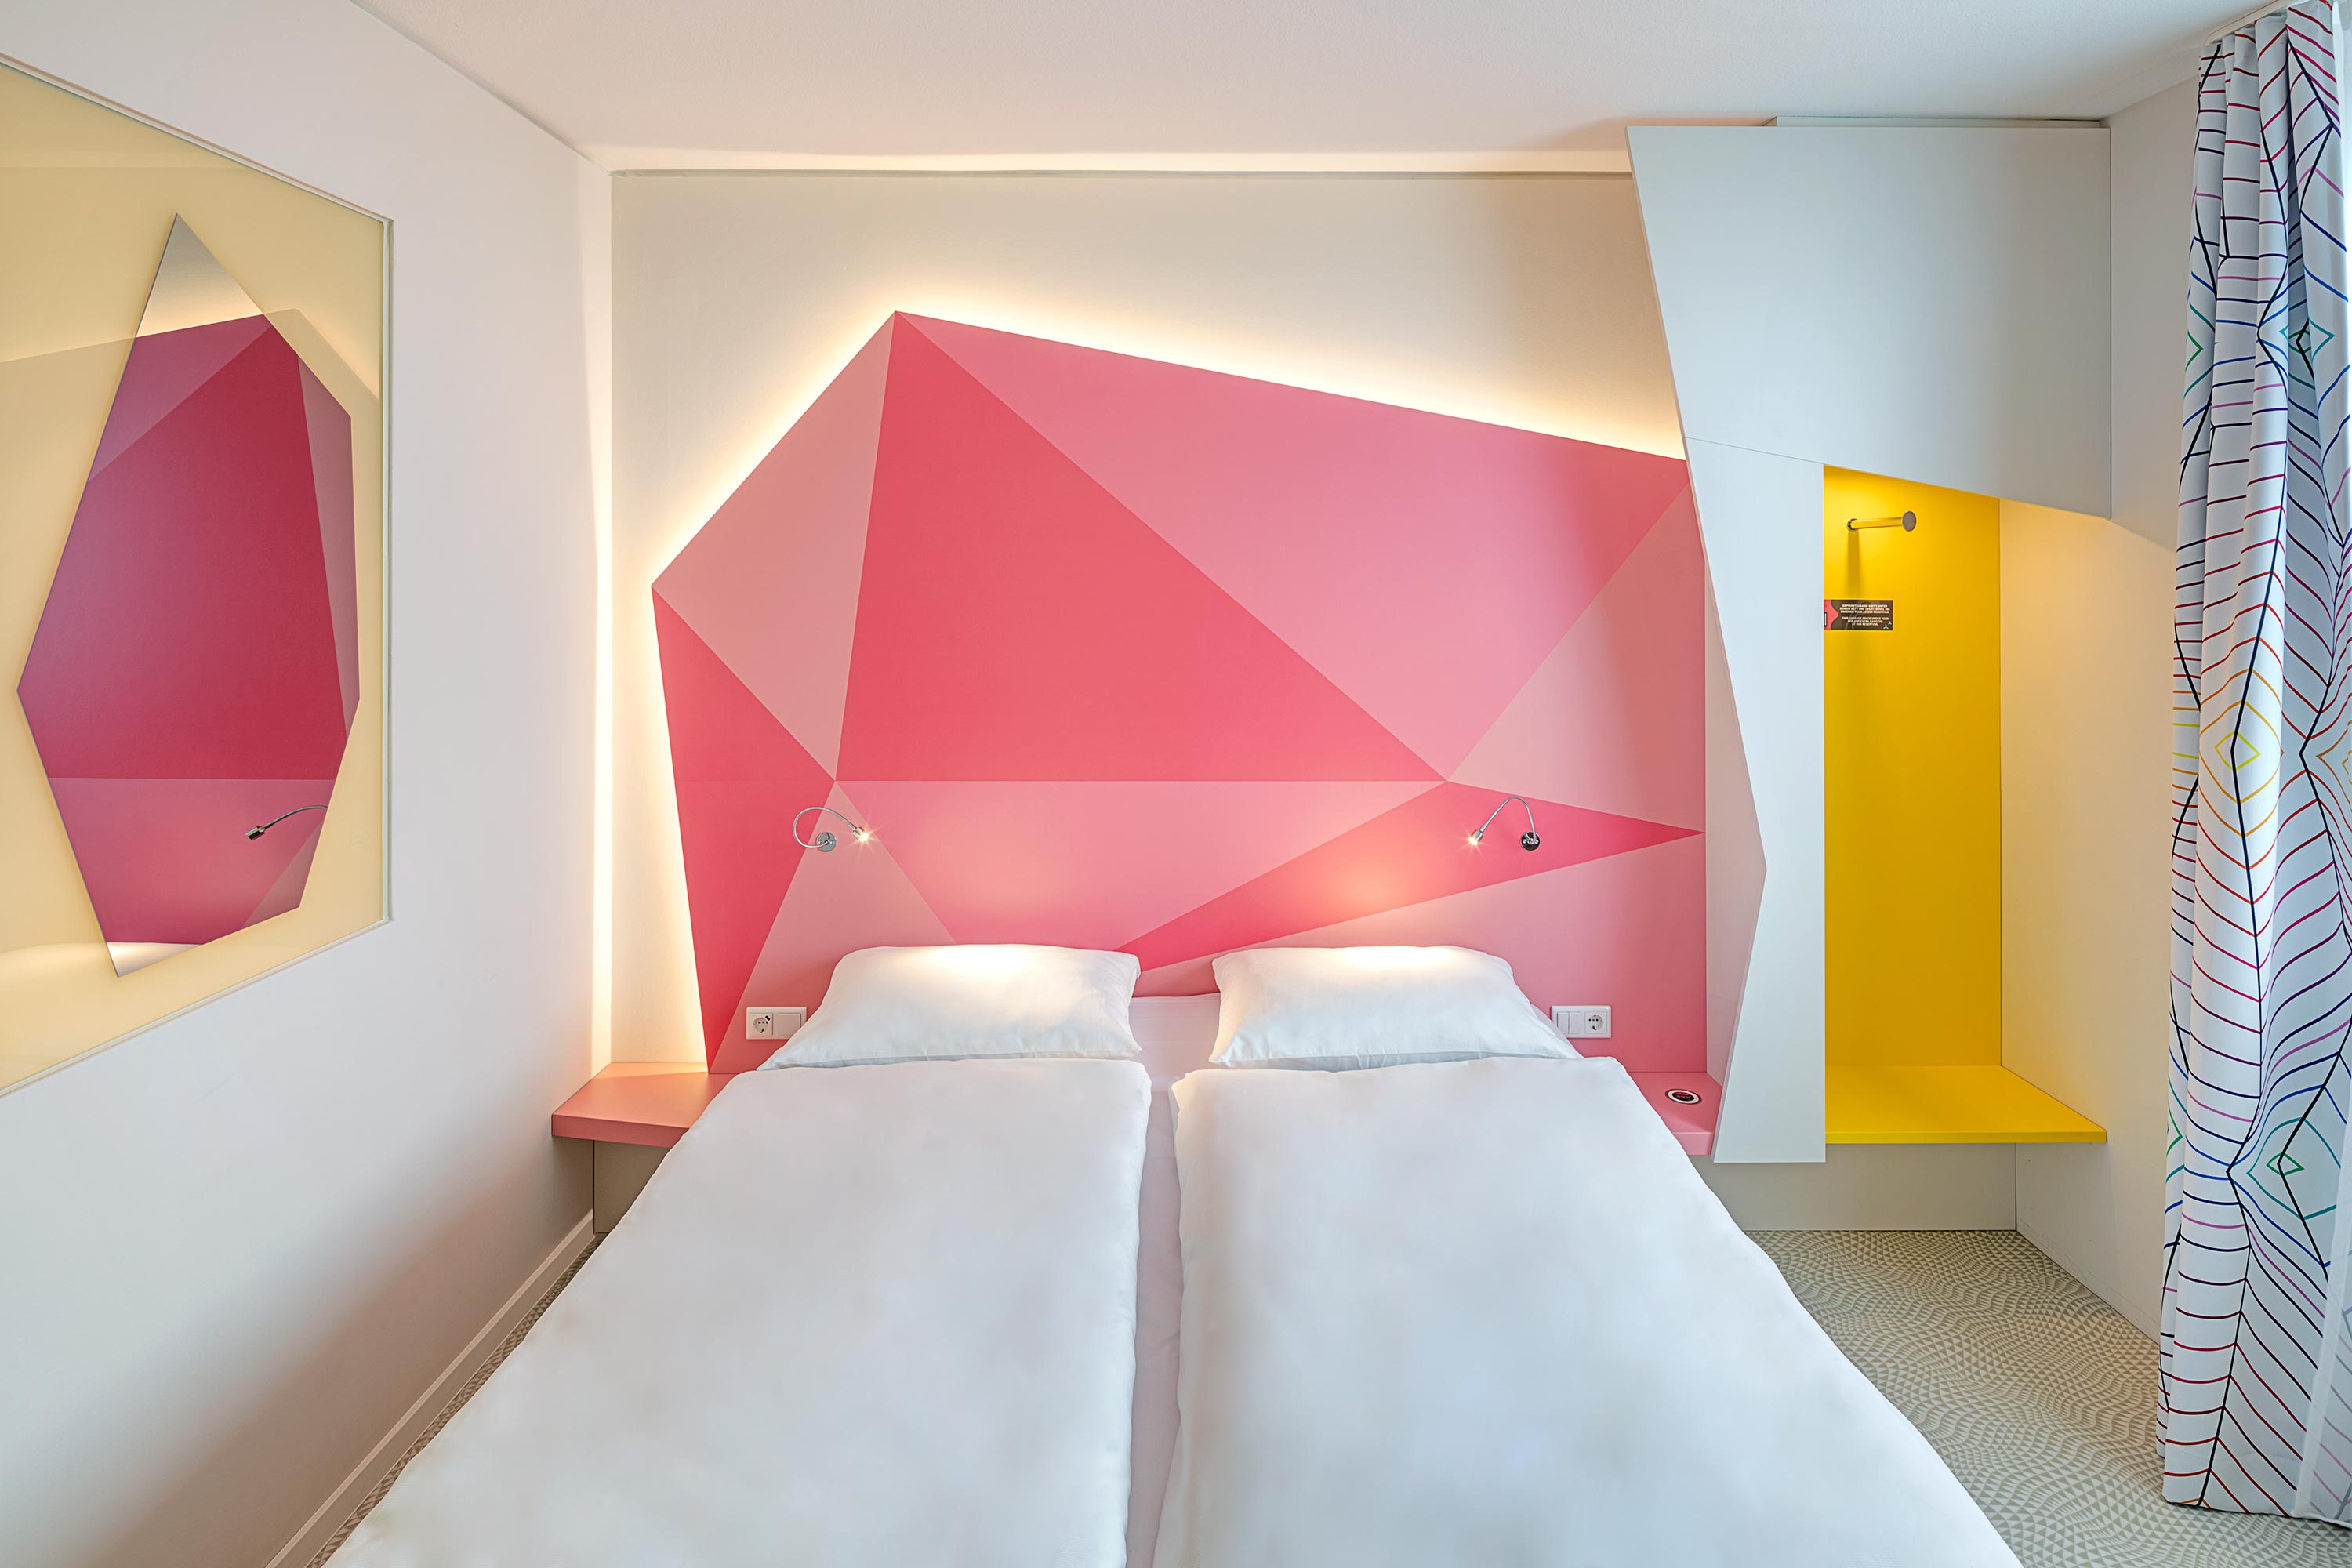 Ein Bett vor einer rosa beleuchteten Wand 